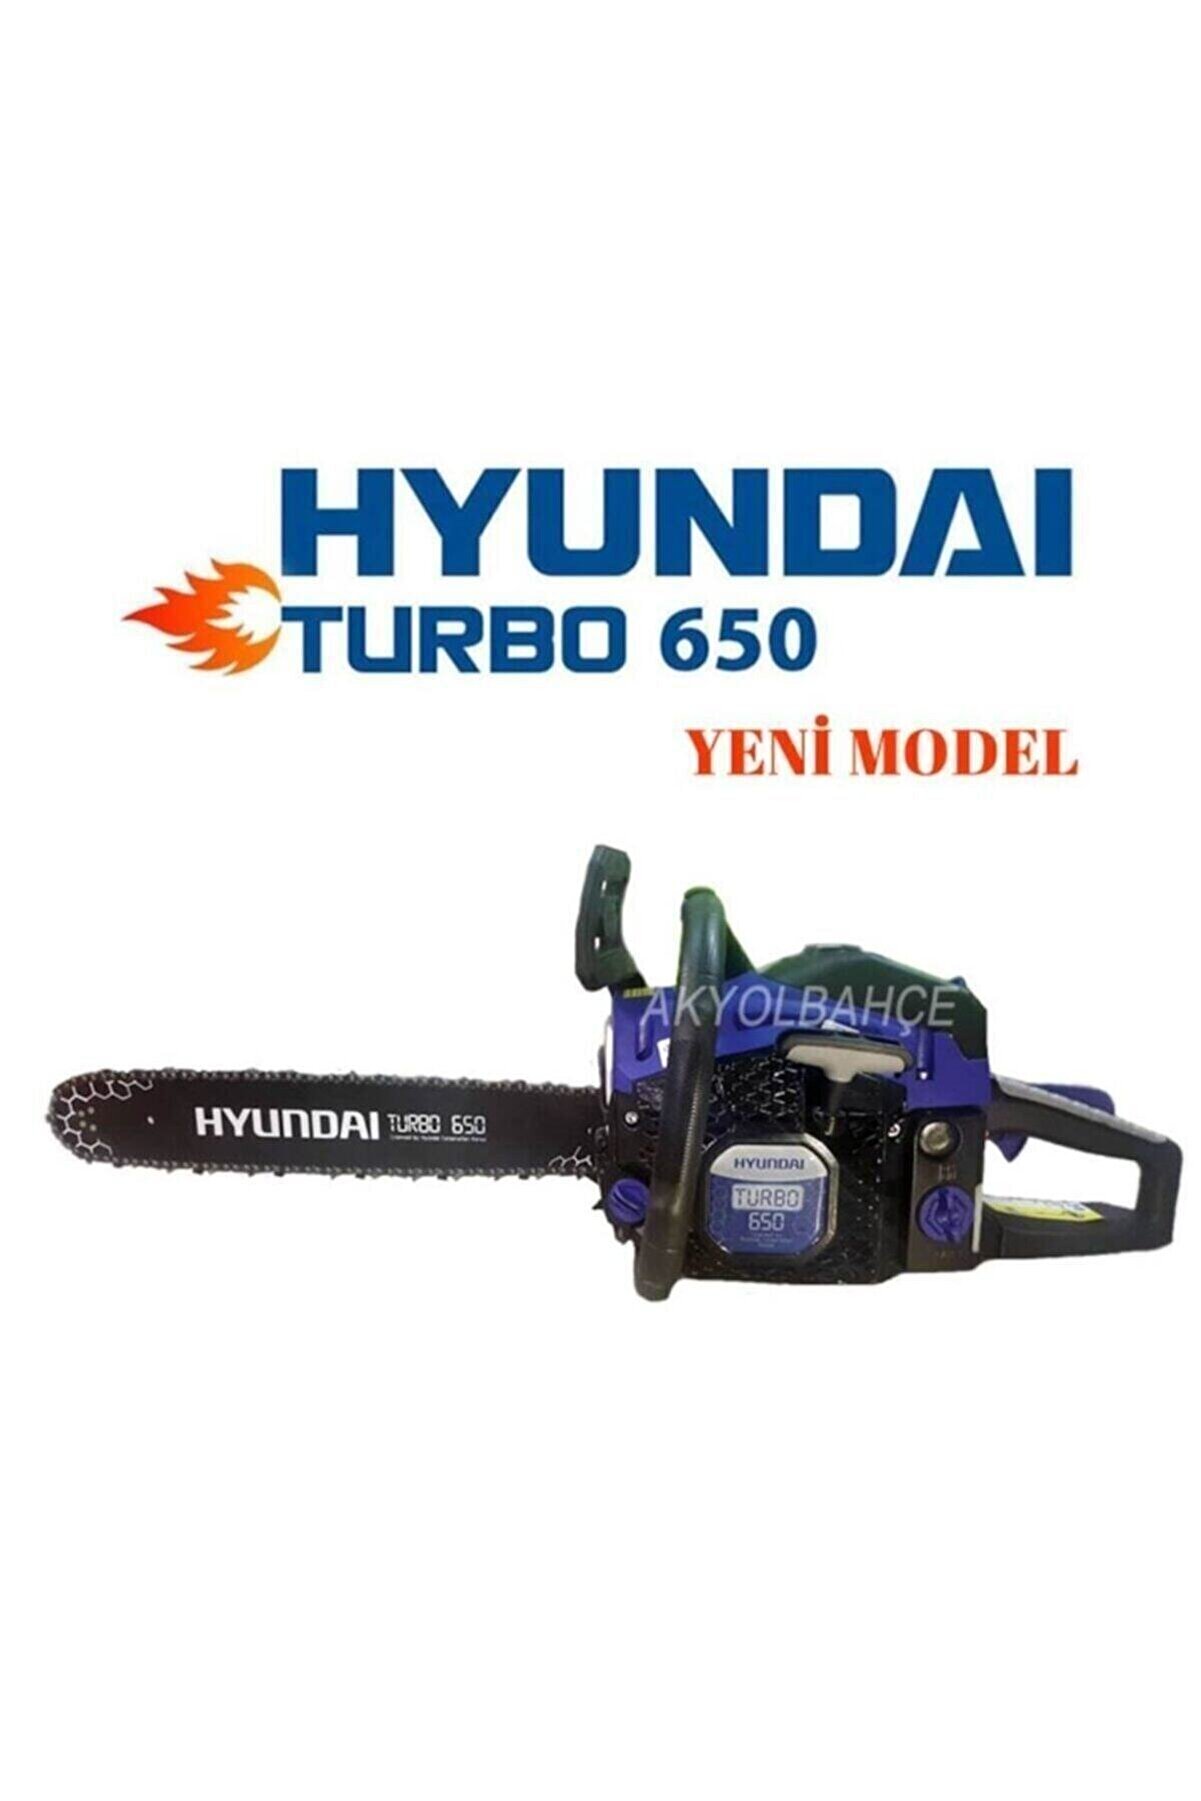 Hyundai Turbo 650 Ağaç Kesim Motoru Testere